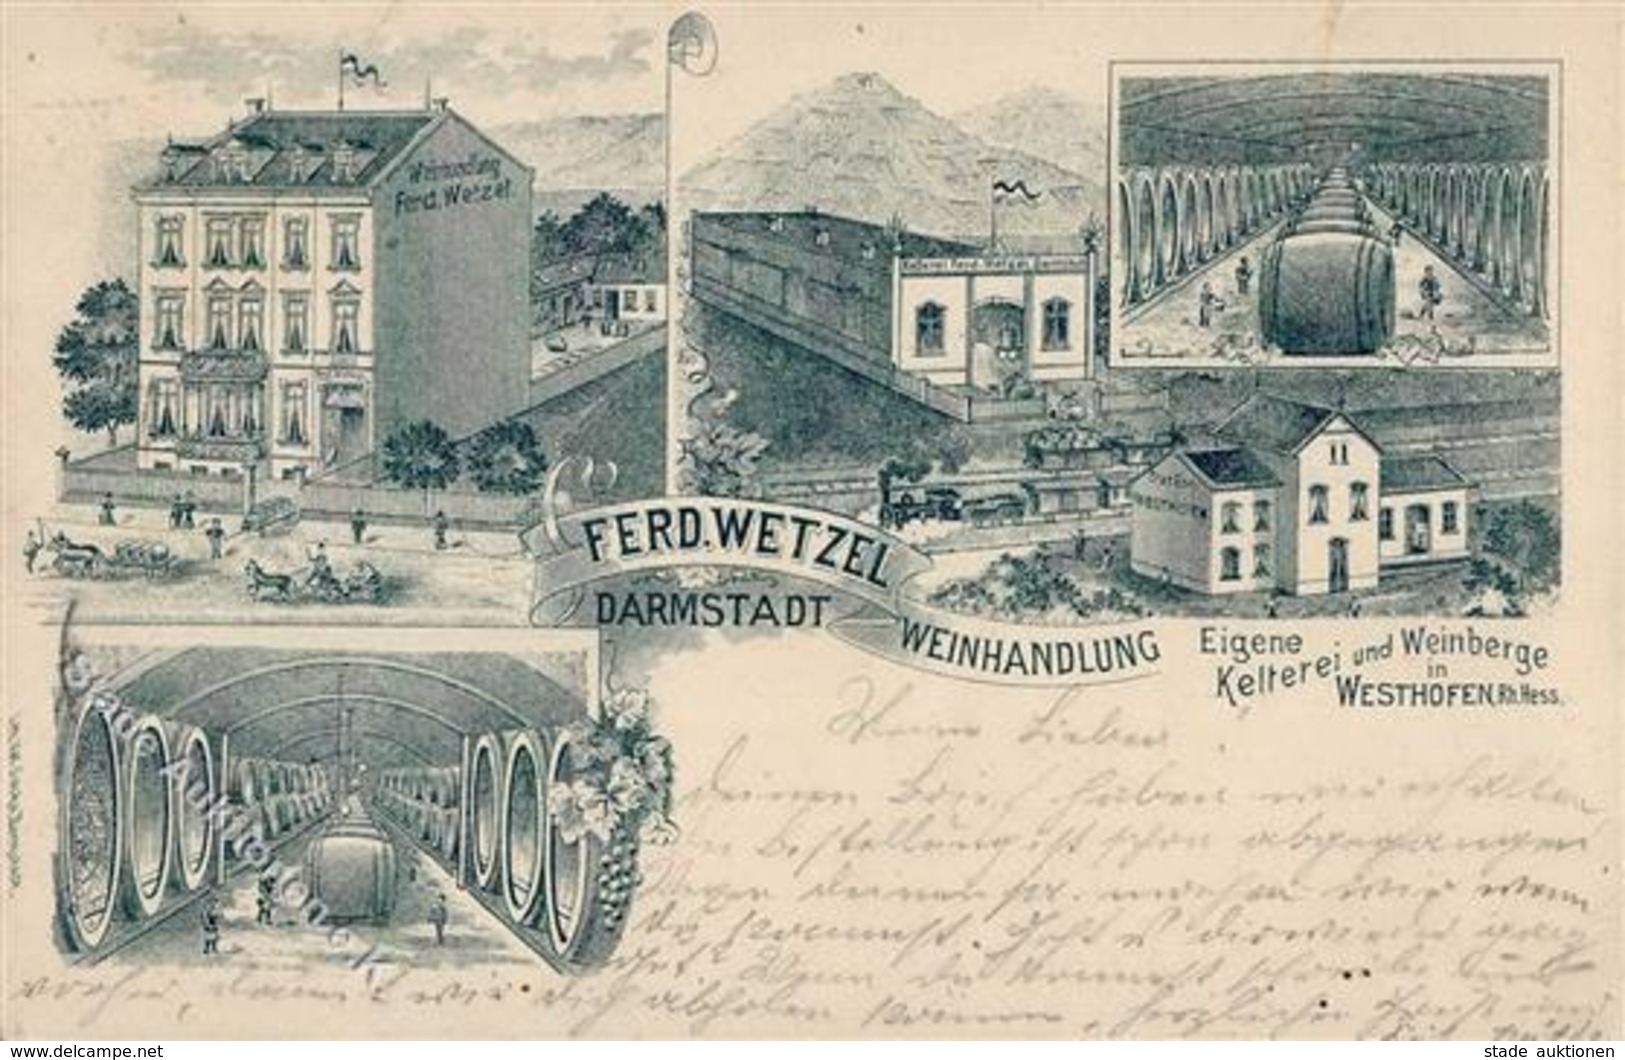 Wein Darmstadt (6100) Weinhandlung Ferd. Wetzel 1900 I-II Vigne - Exposiciones